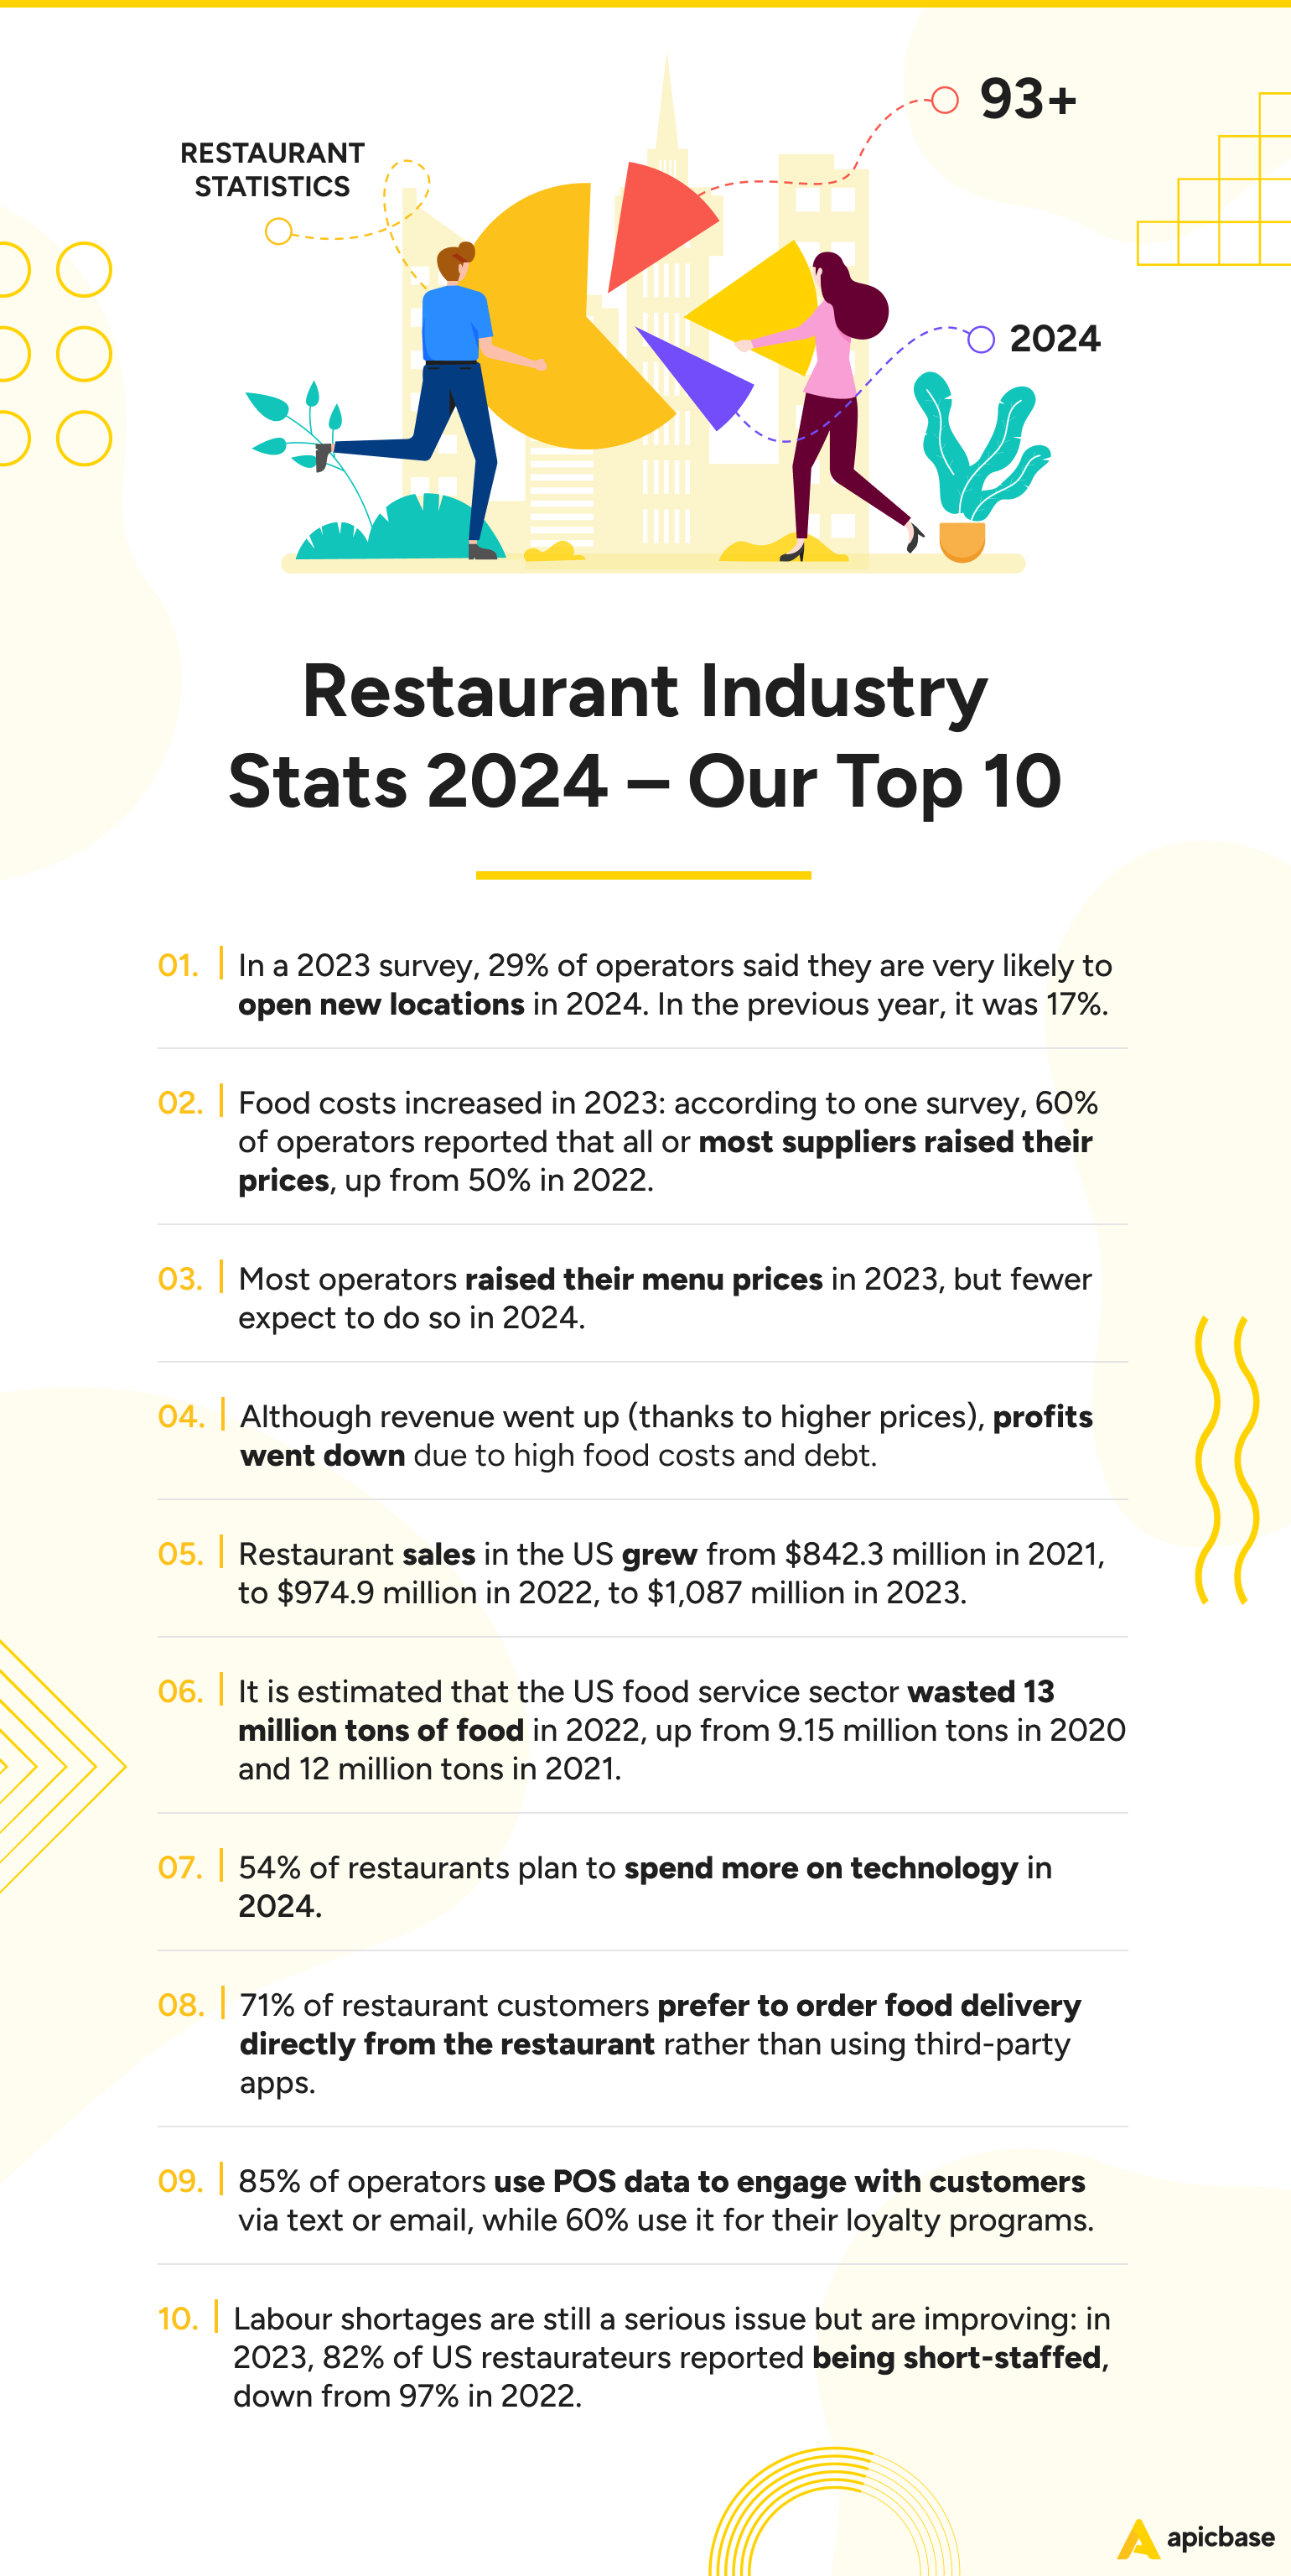 Top 10 Restaurant Industry Stats 2024